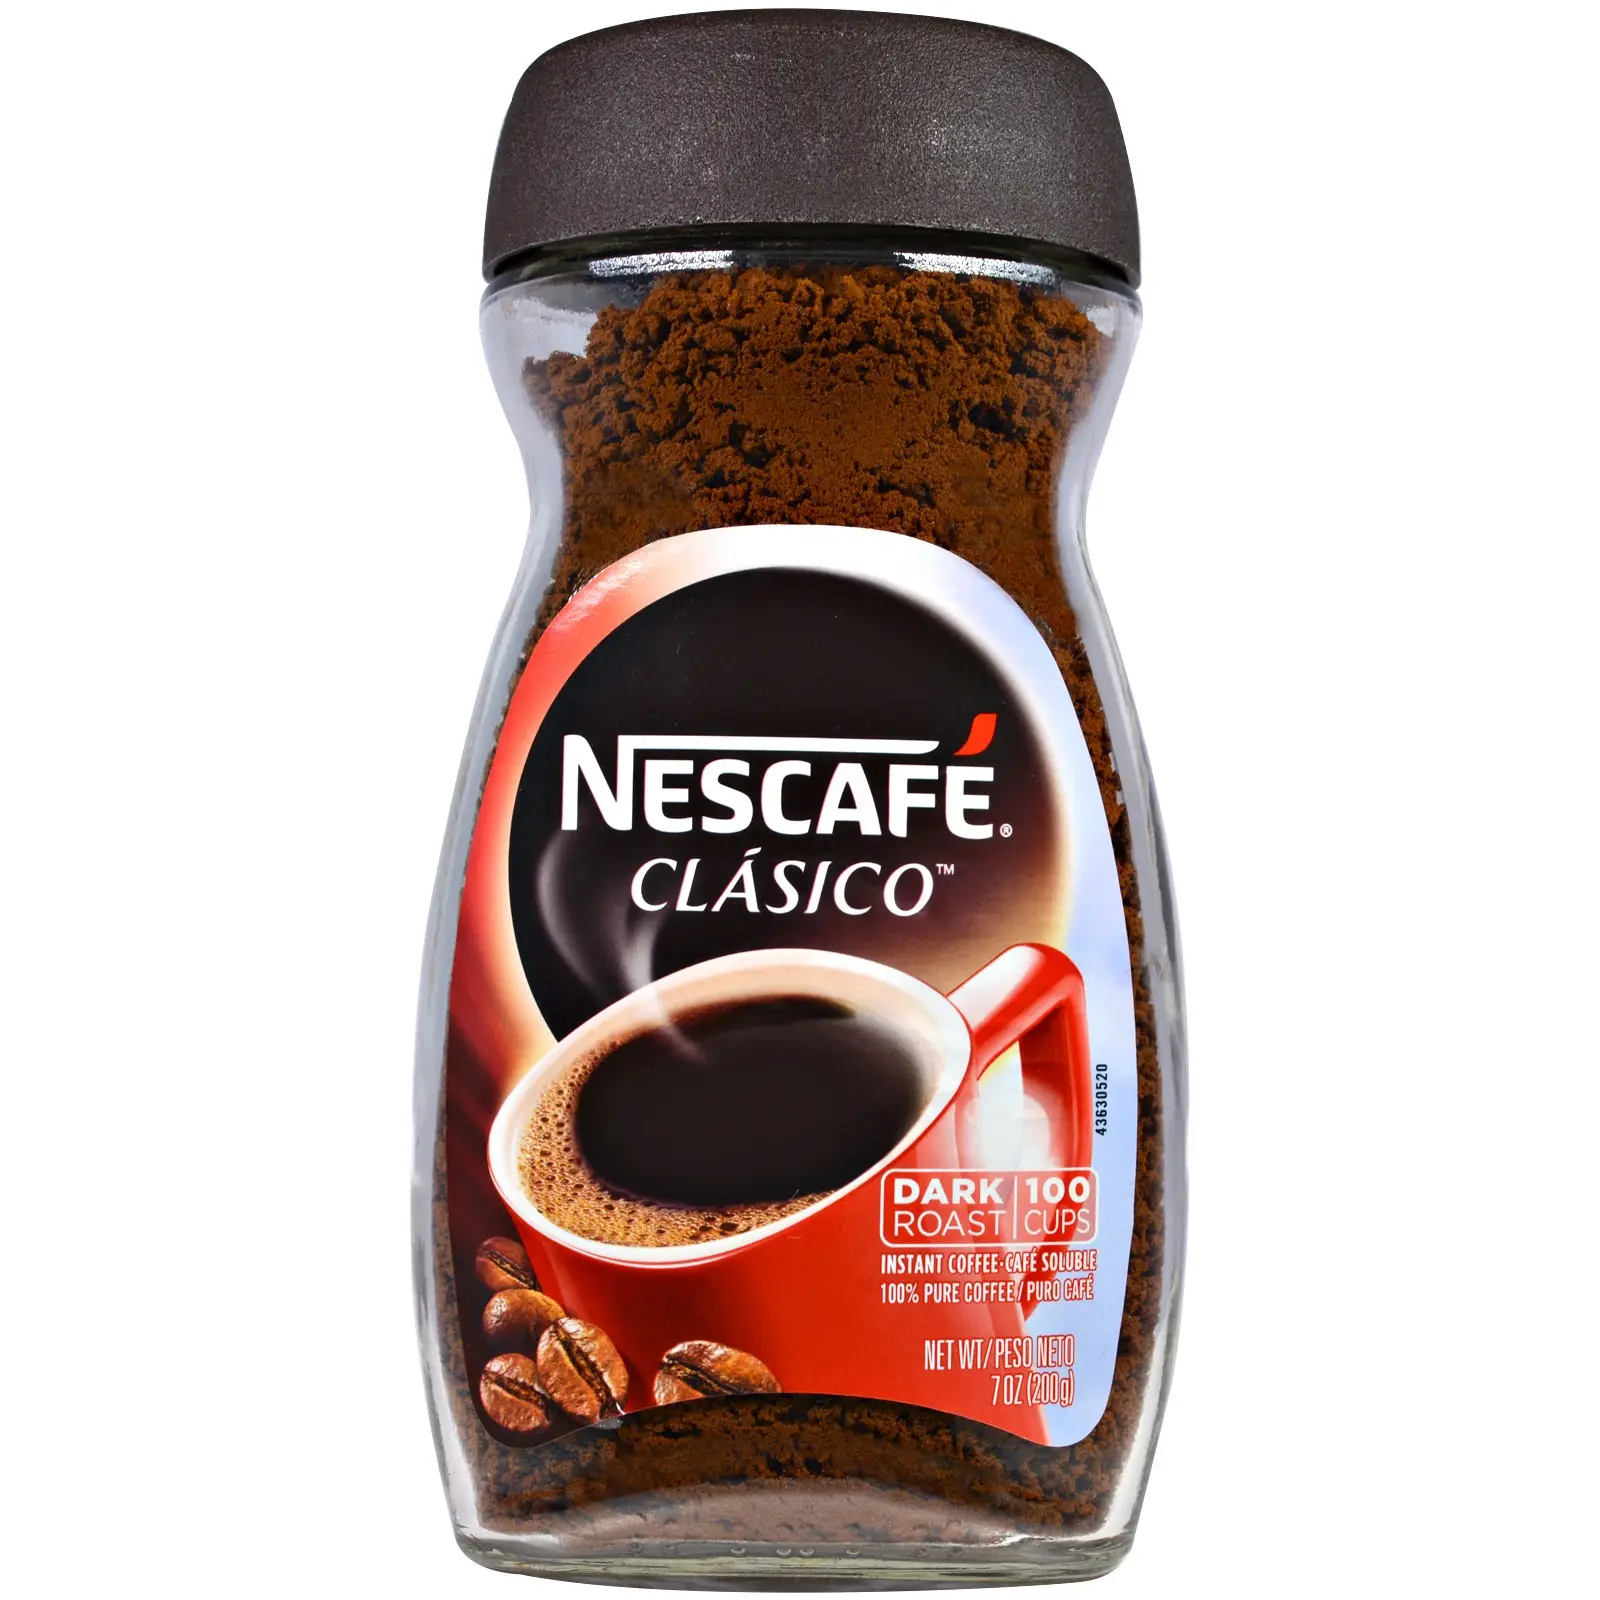 Кофе дарк. Кофе Nescafe Gold 200 г. Кофе растворимый Taster's choice Original. Нескафе Блэк Роаст 85г. Nescafe Classic Dark Roast.